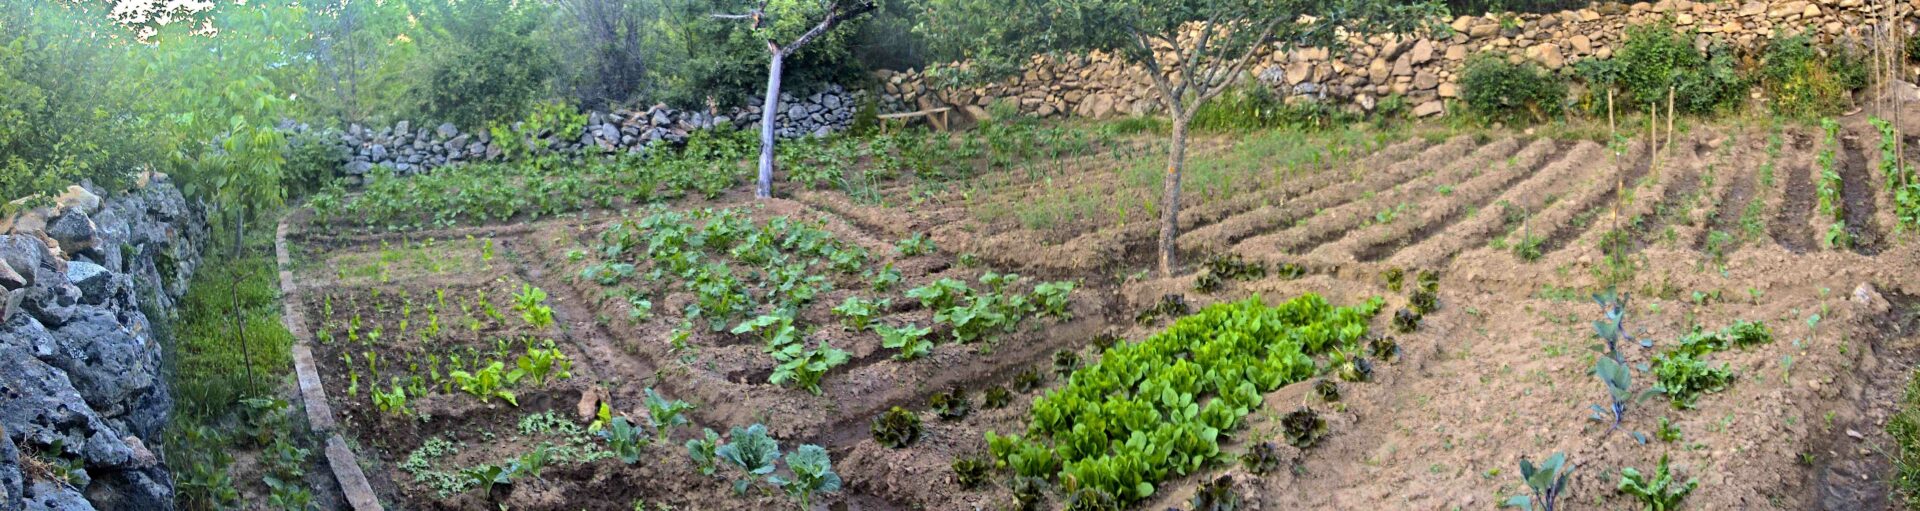 huerto agricultura ecológica